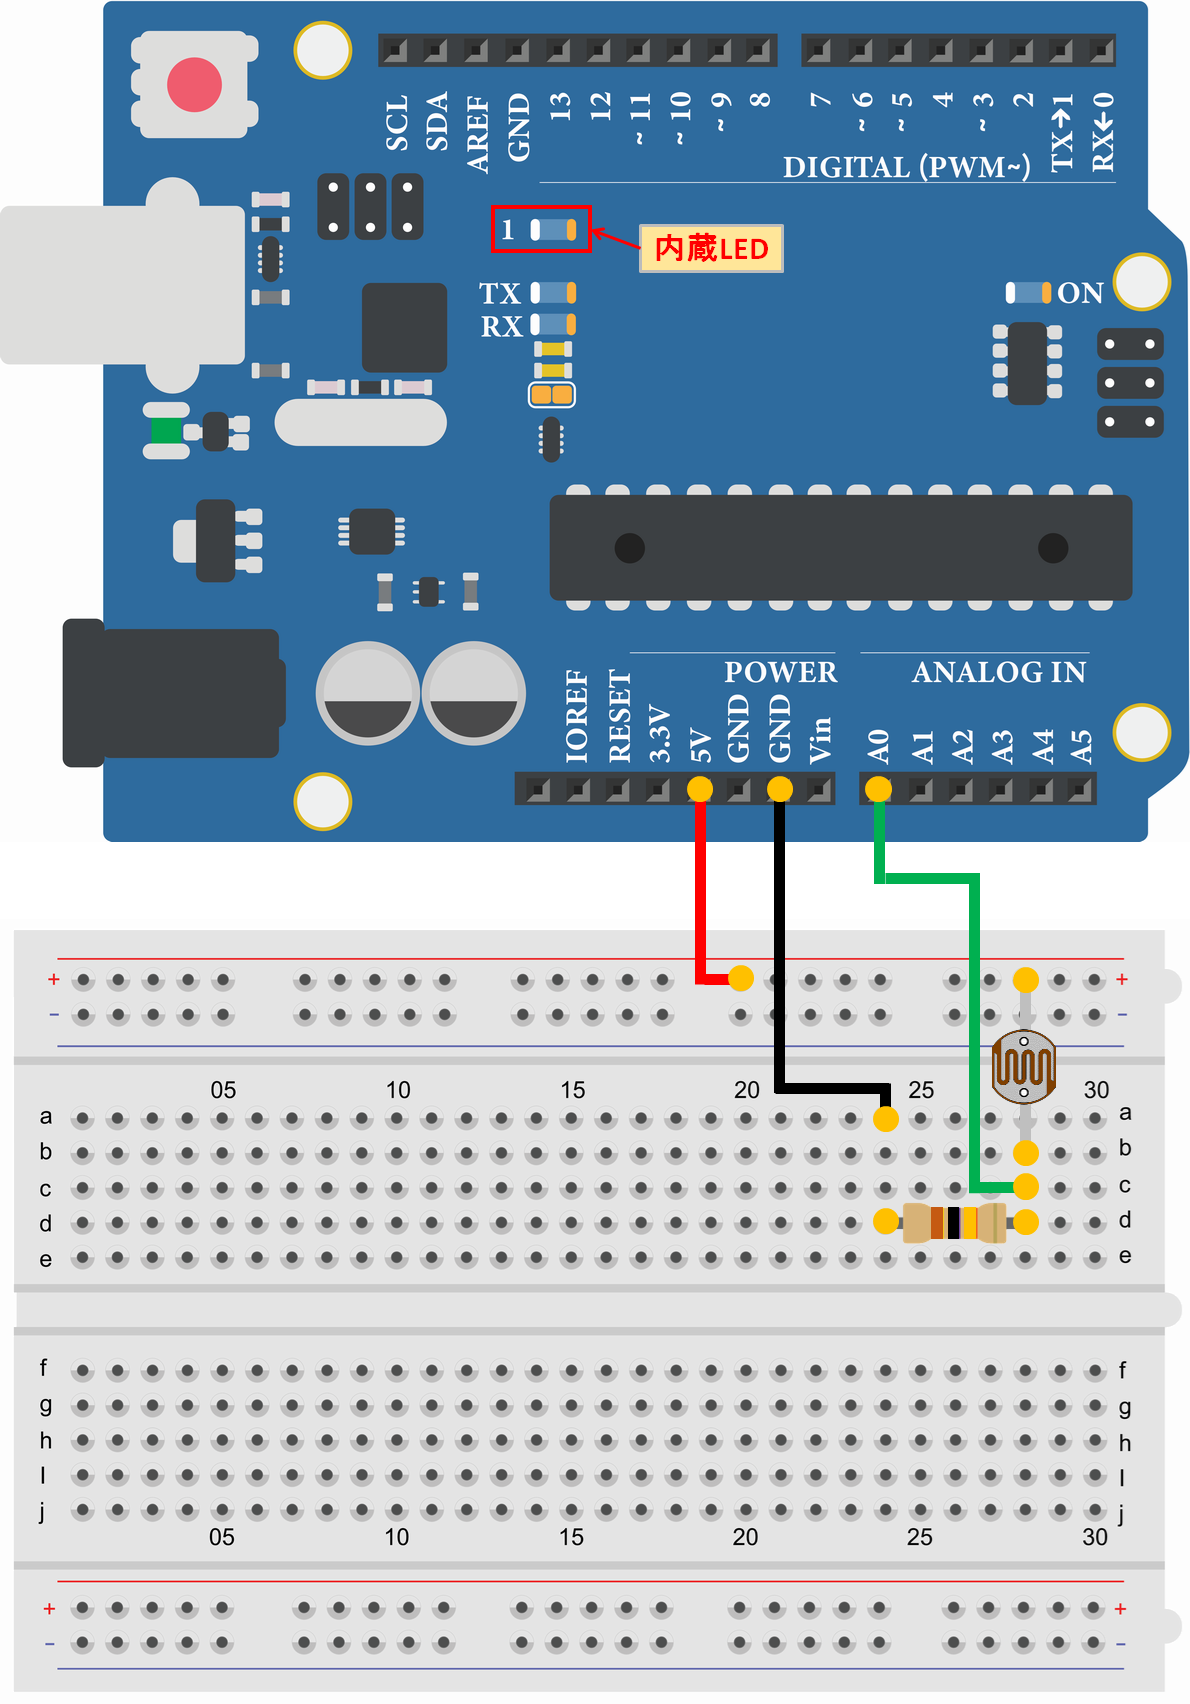 Arduino Uno CdSセル(光センサ) 暗くなるとLED点灯 配線図